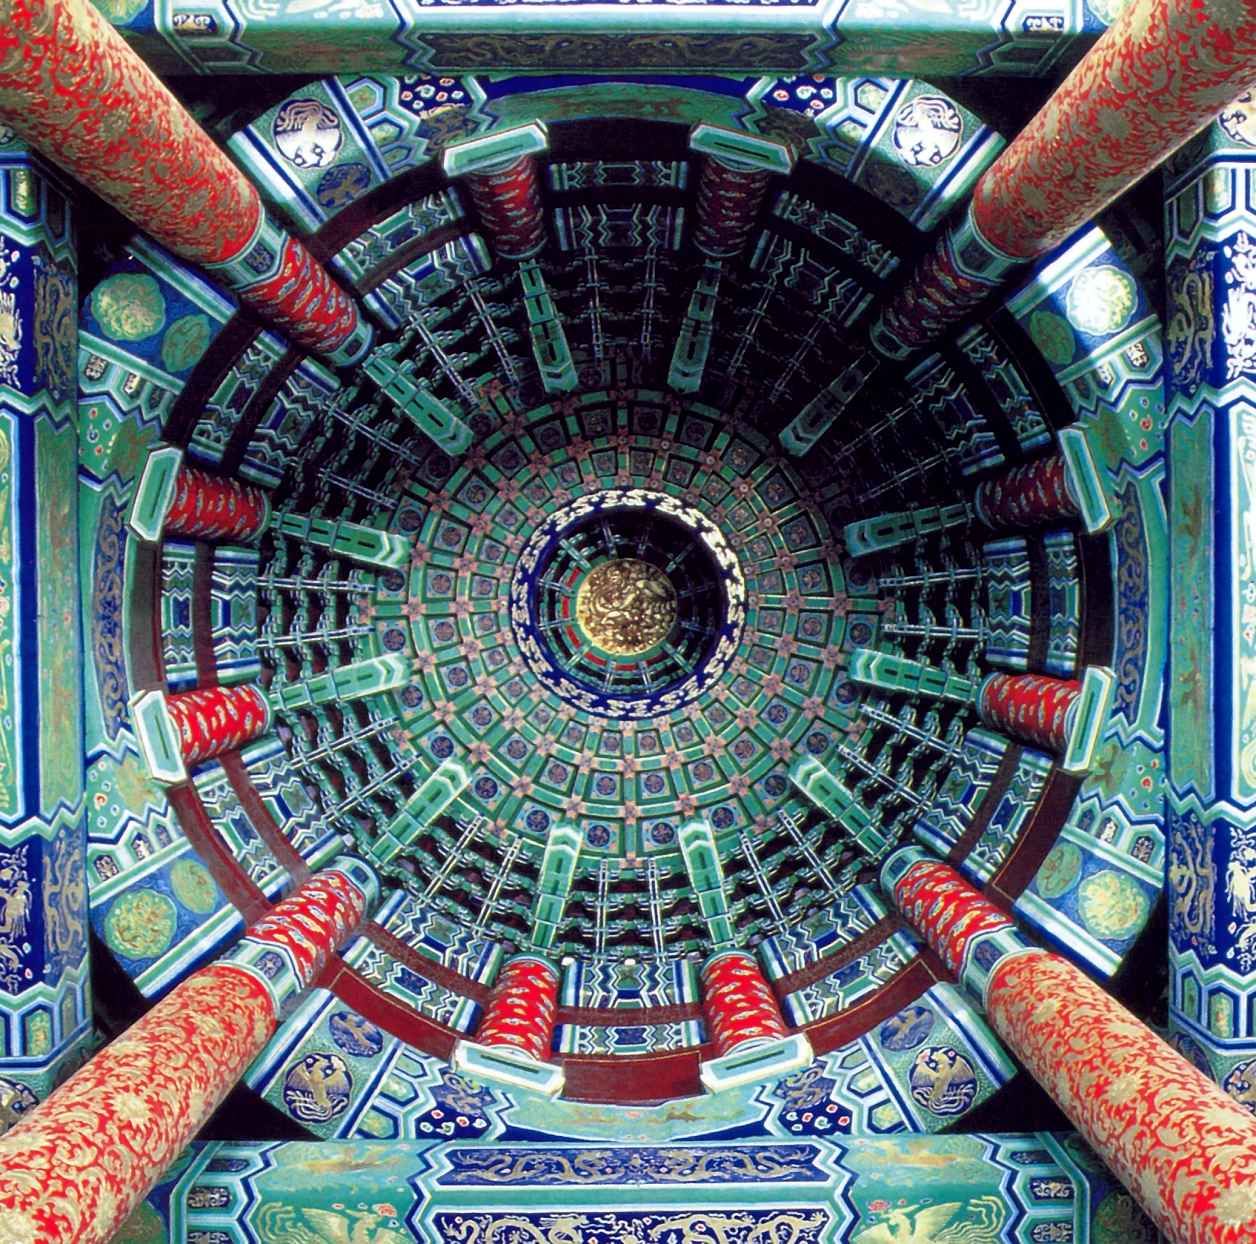 Потолок Храма Неба в Пекине - самое важное ритуальное пространство в имперском Китае